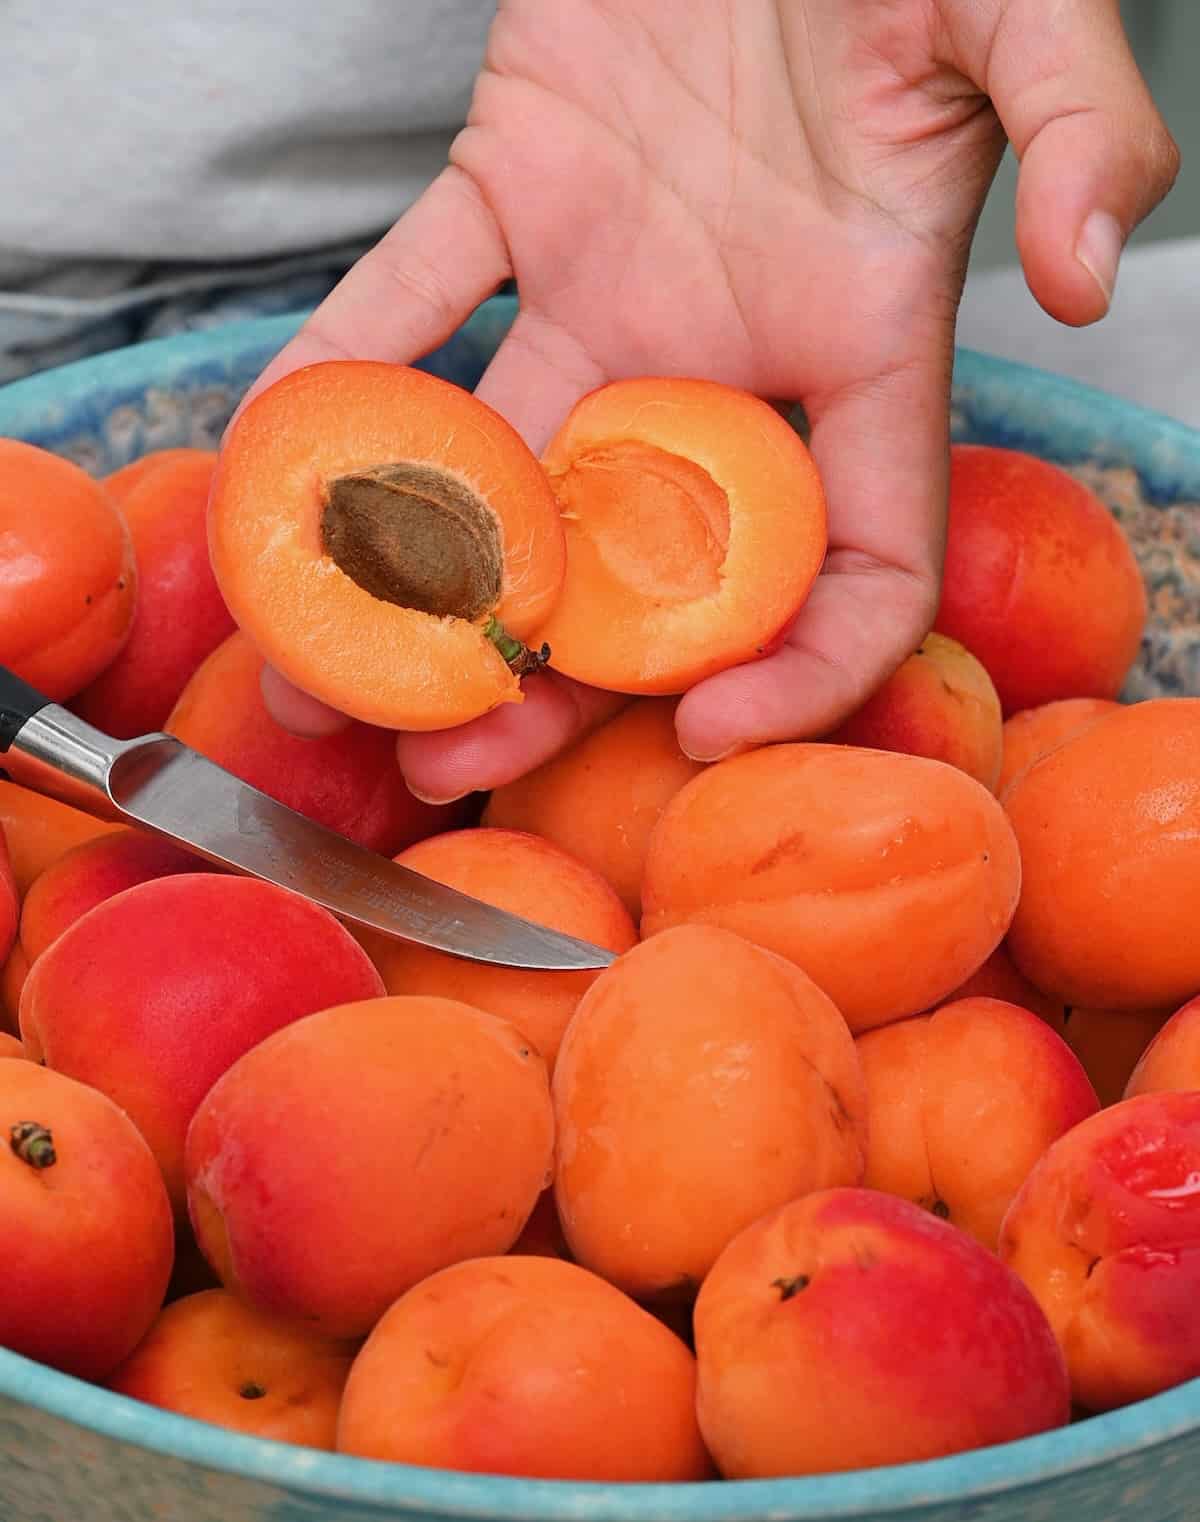 Pitting apricots